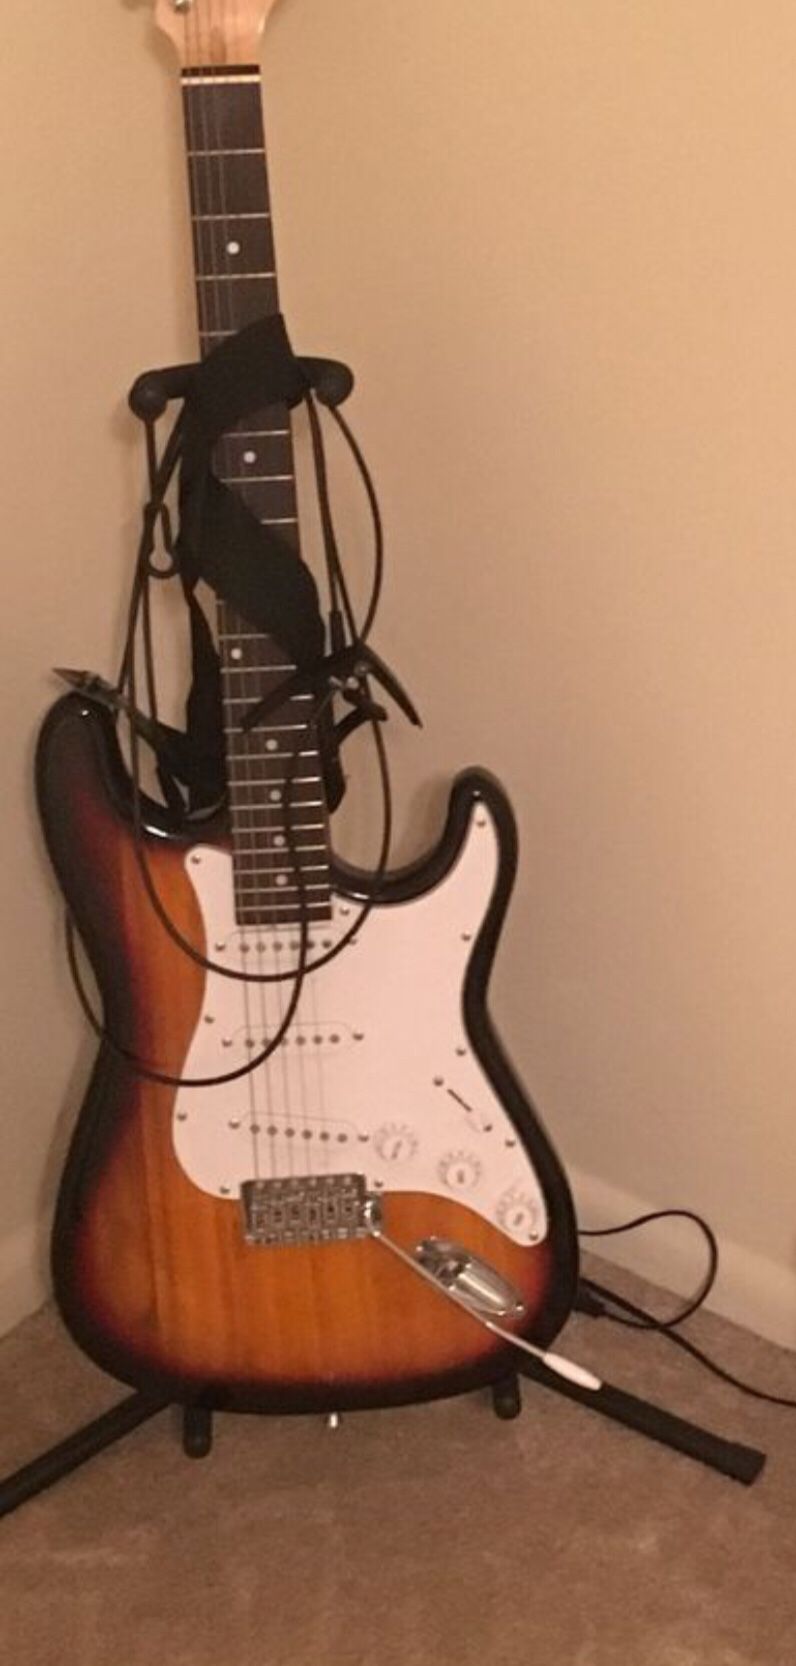 An Electric Guitar